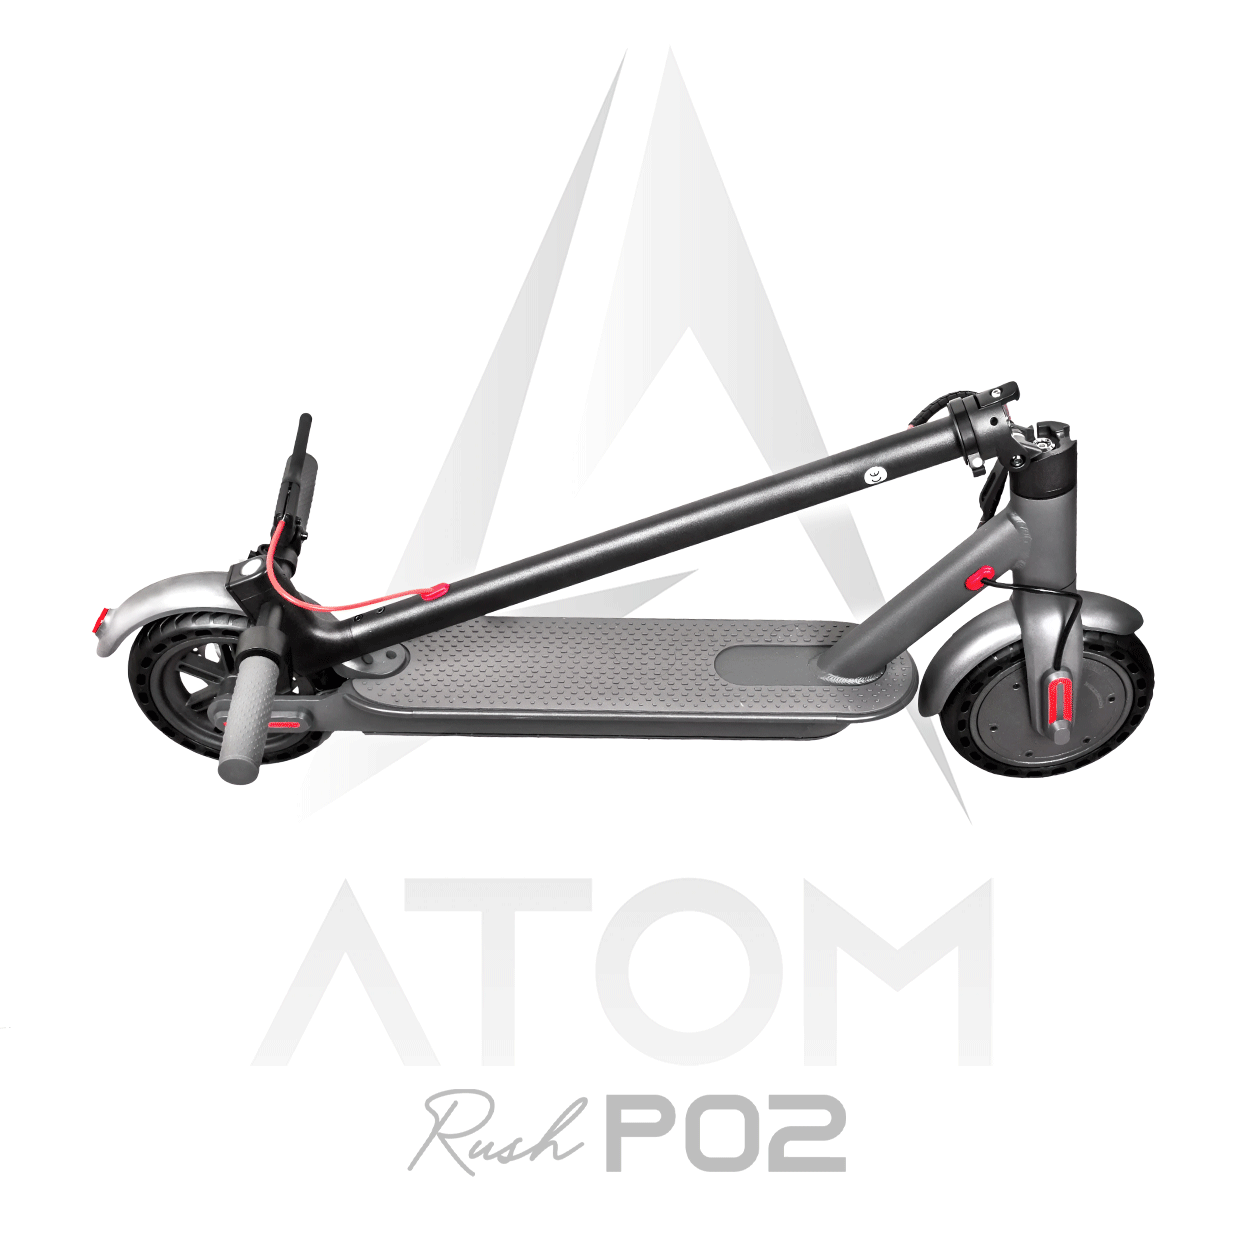 Trottinette électrique, Atom Rush P02 | 350 W - Atom Motors